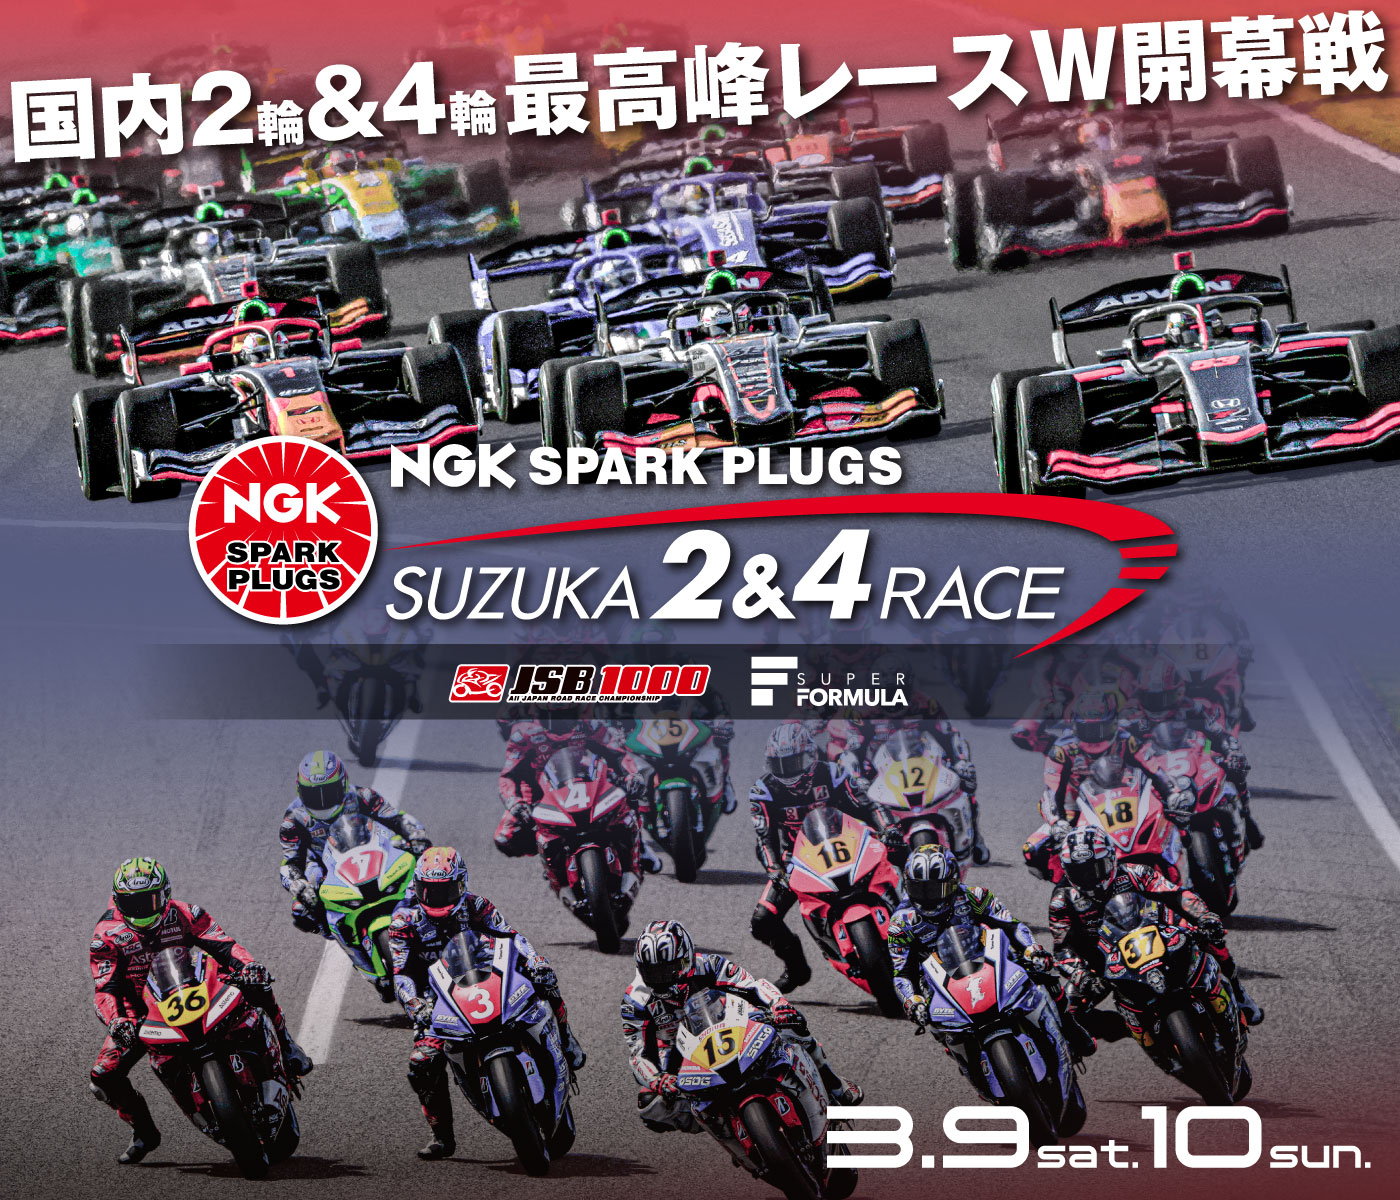 SUZUKA 2&4 Race